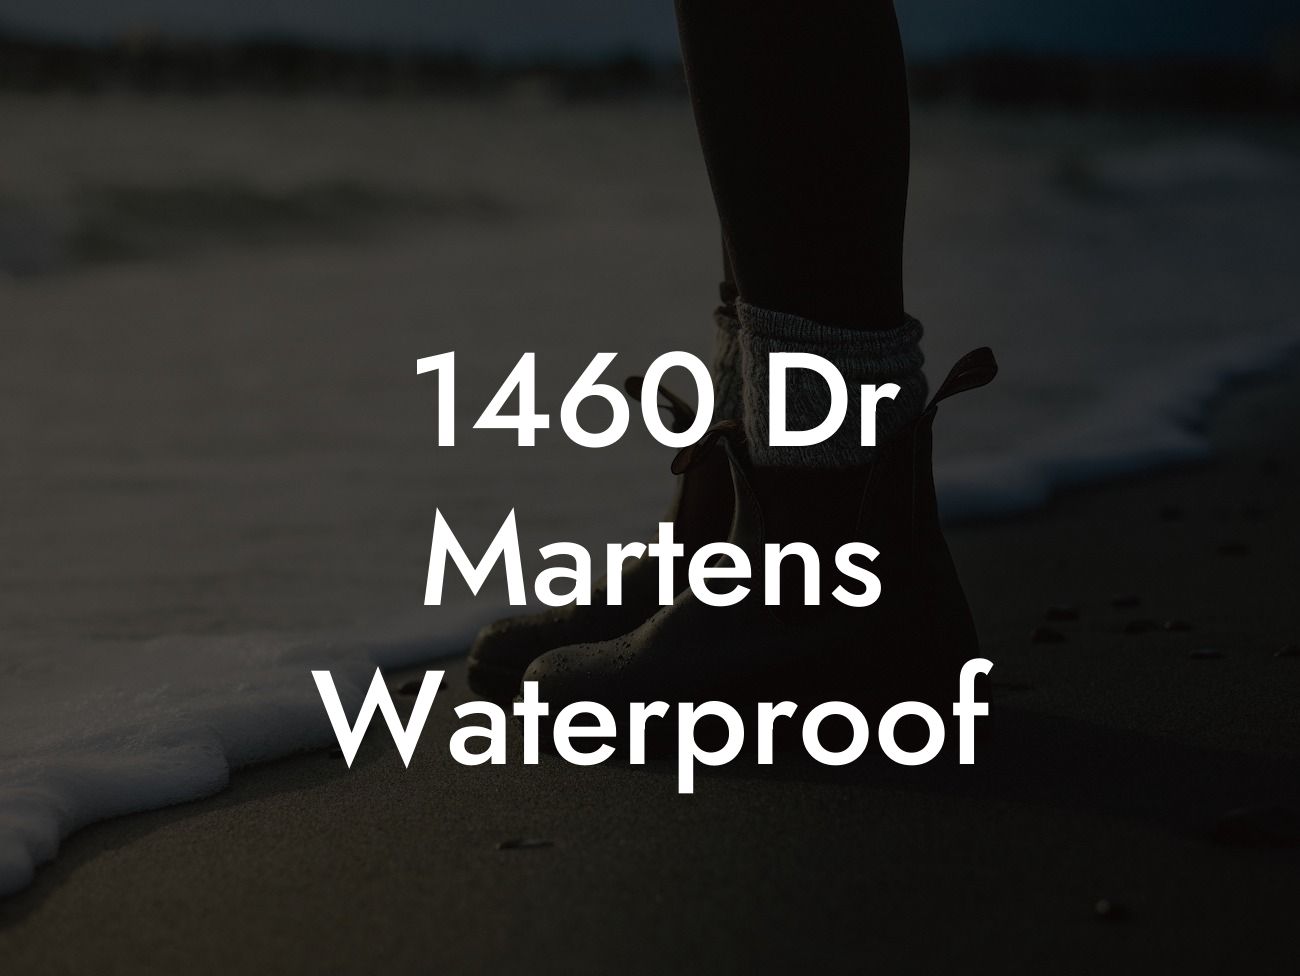 1460 Dr Martens Waterproof